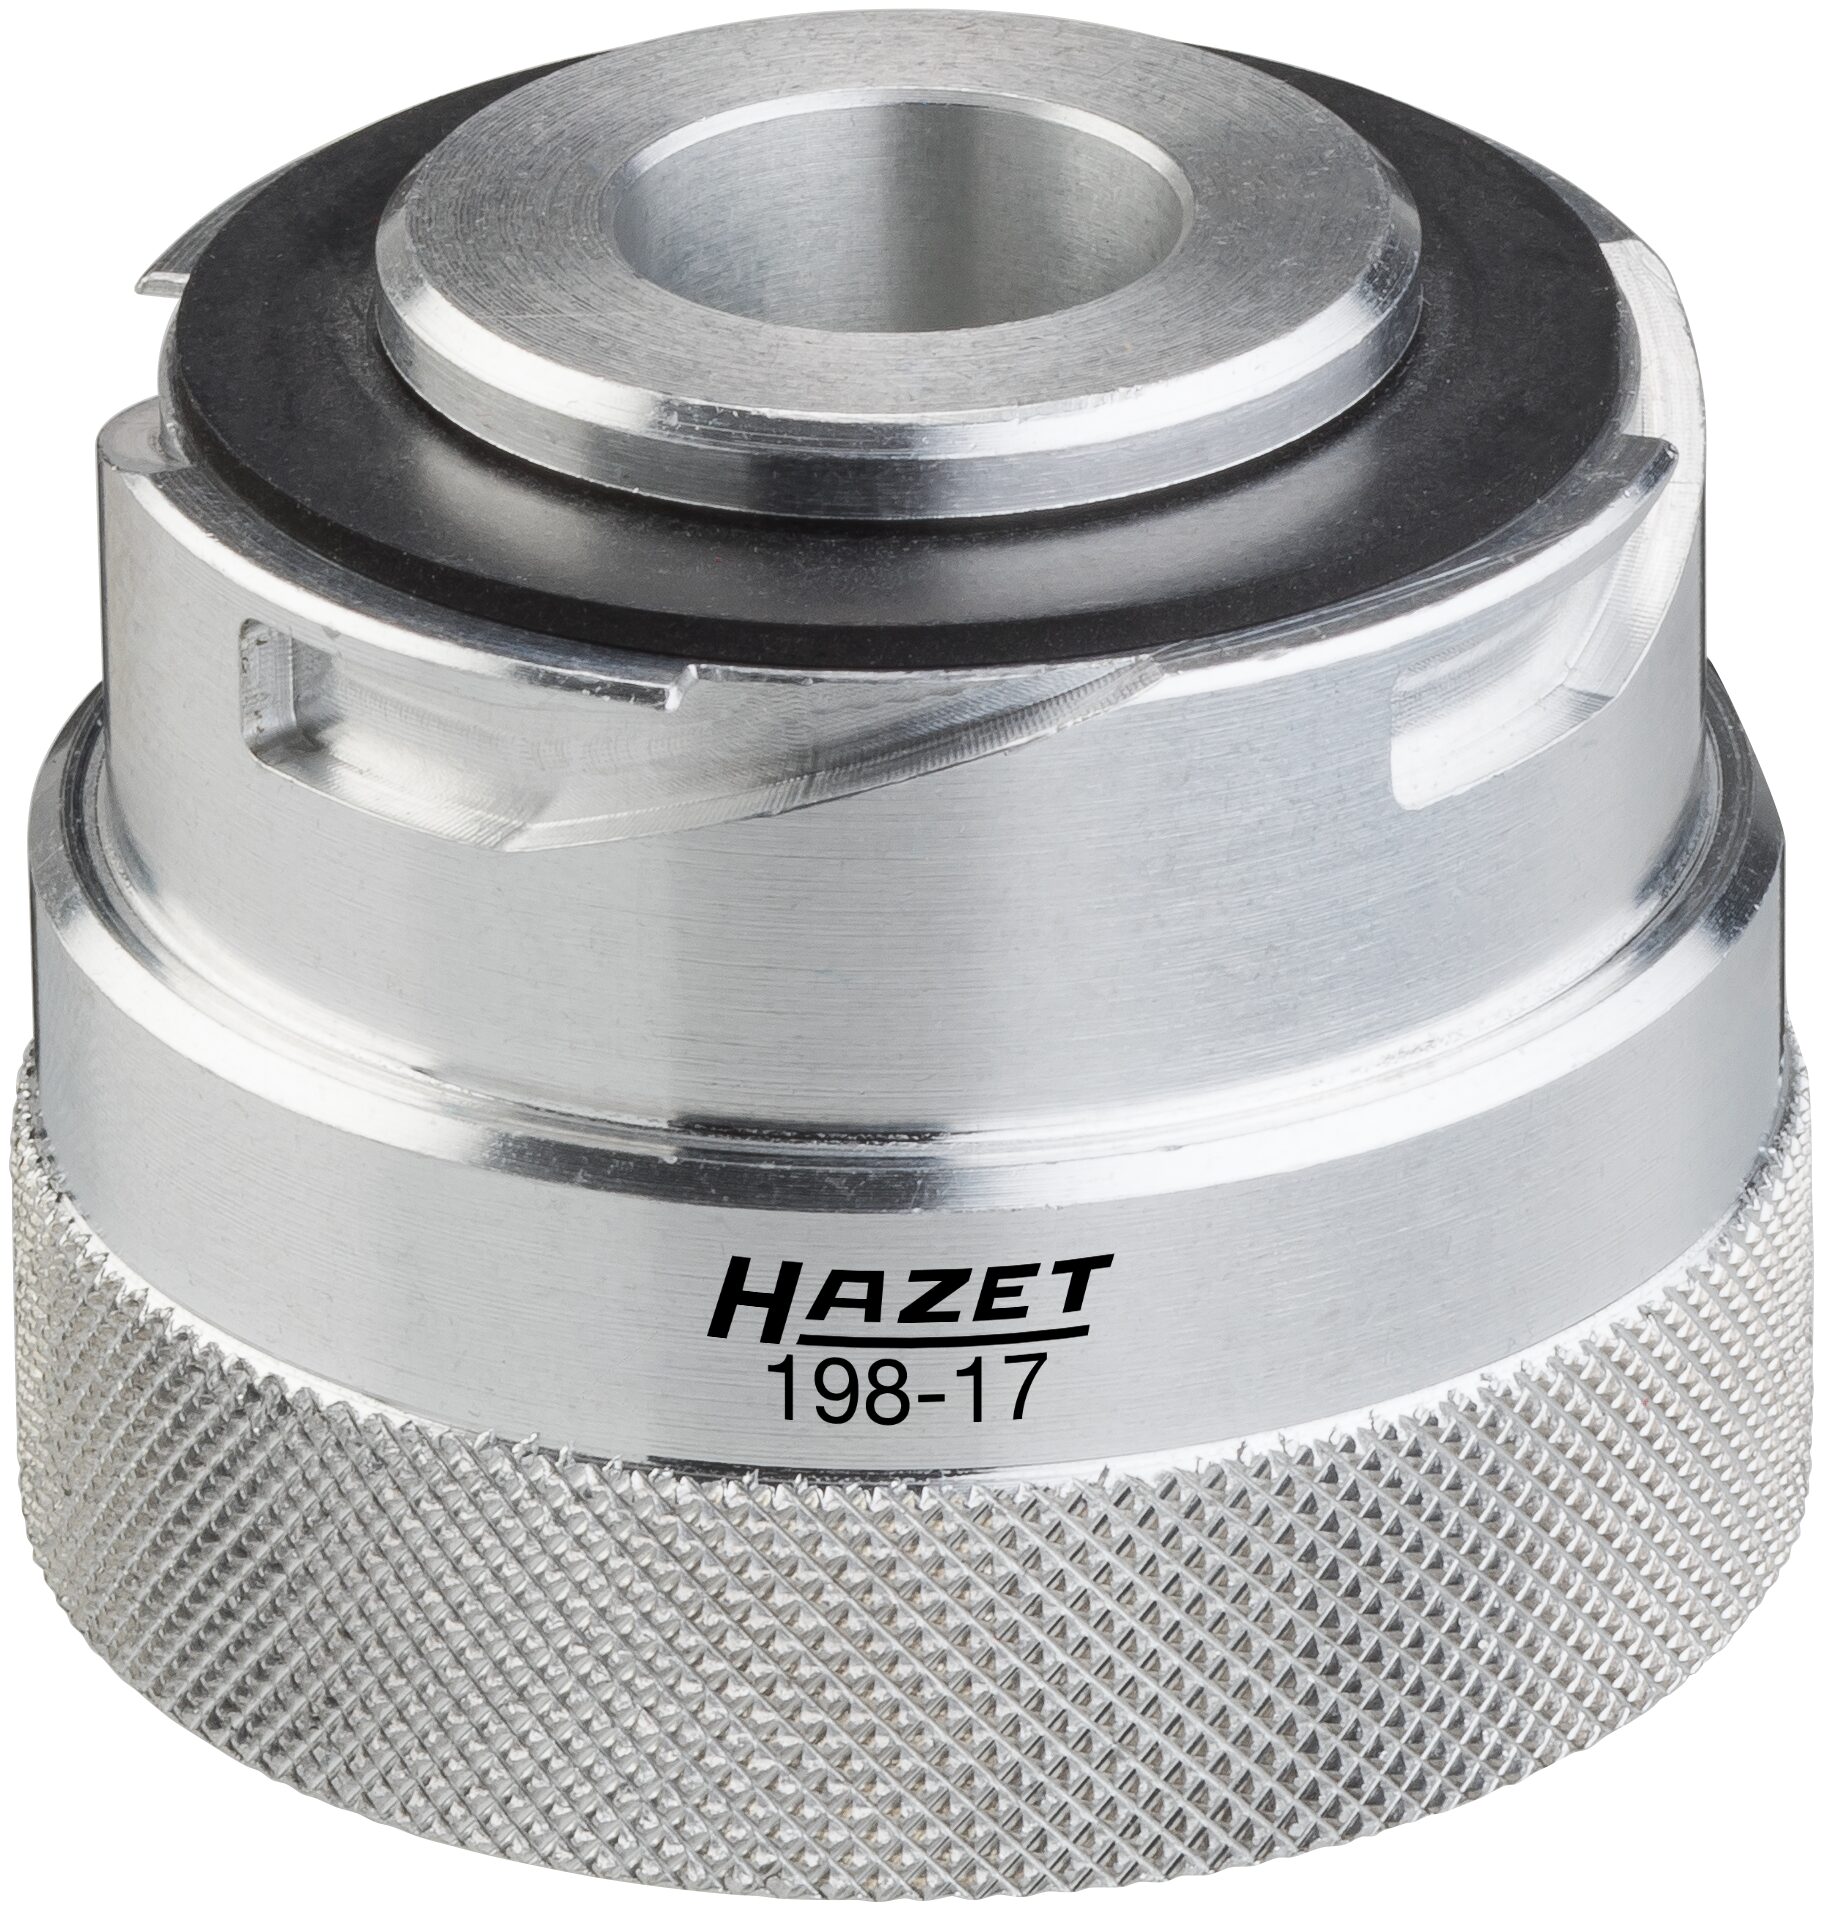 HAZET Motoröl Einfüll-Adapter 198-17